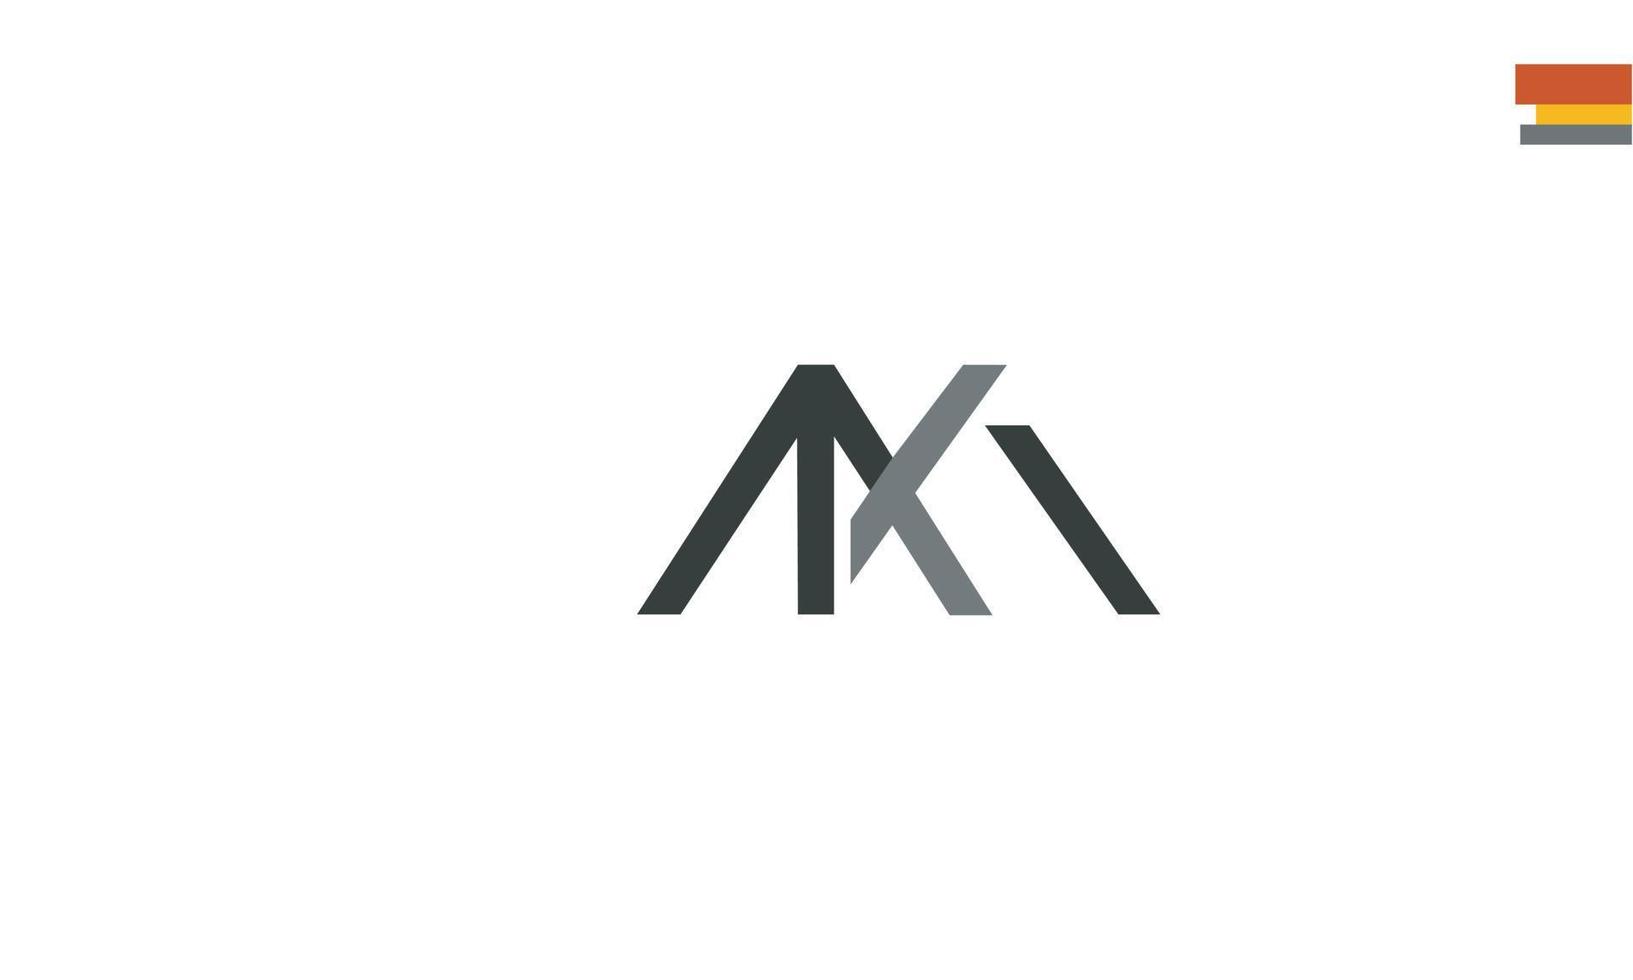 alfabeto letras iniciales monograma logo am, ma, a y m vector